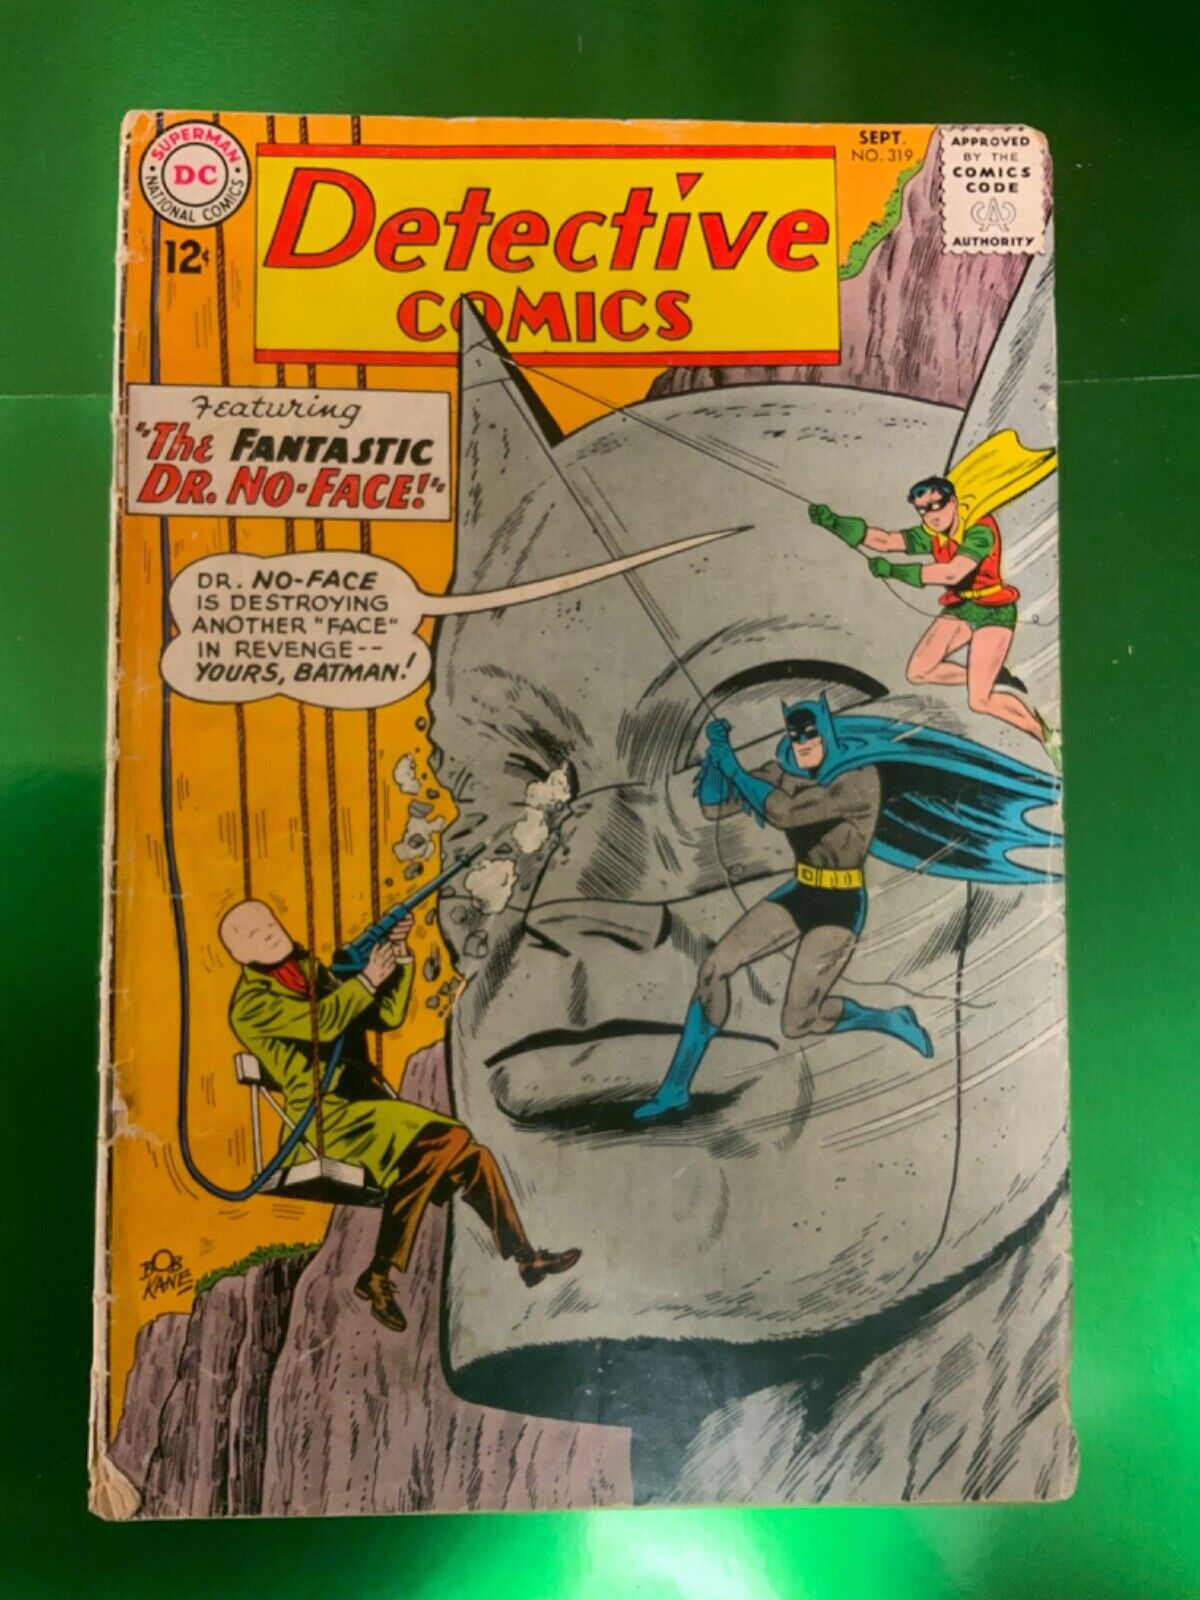 DEFACING BATMAN? Detective Comics #319 1963 Dr. No-Face, Martian Manhunter